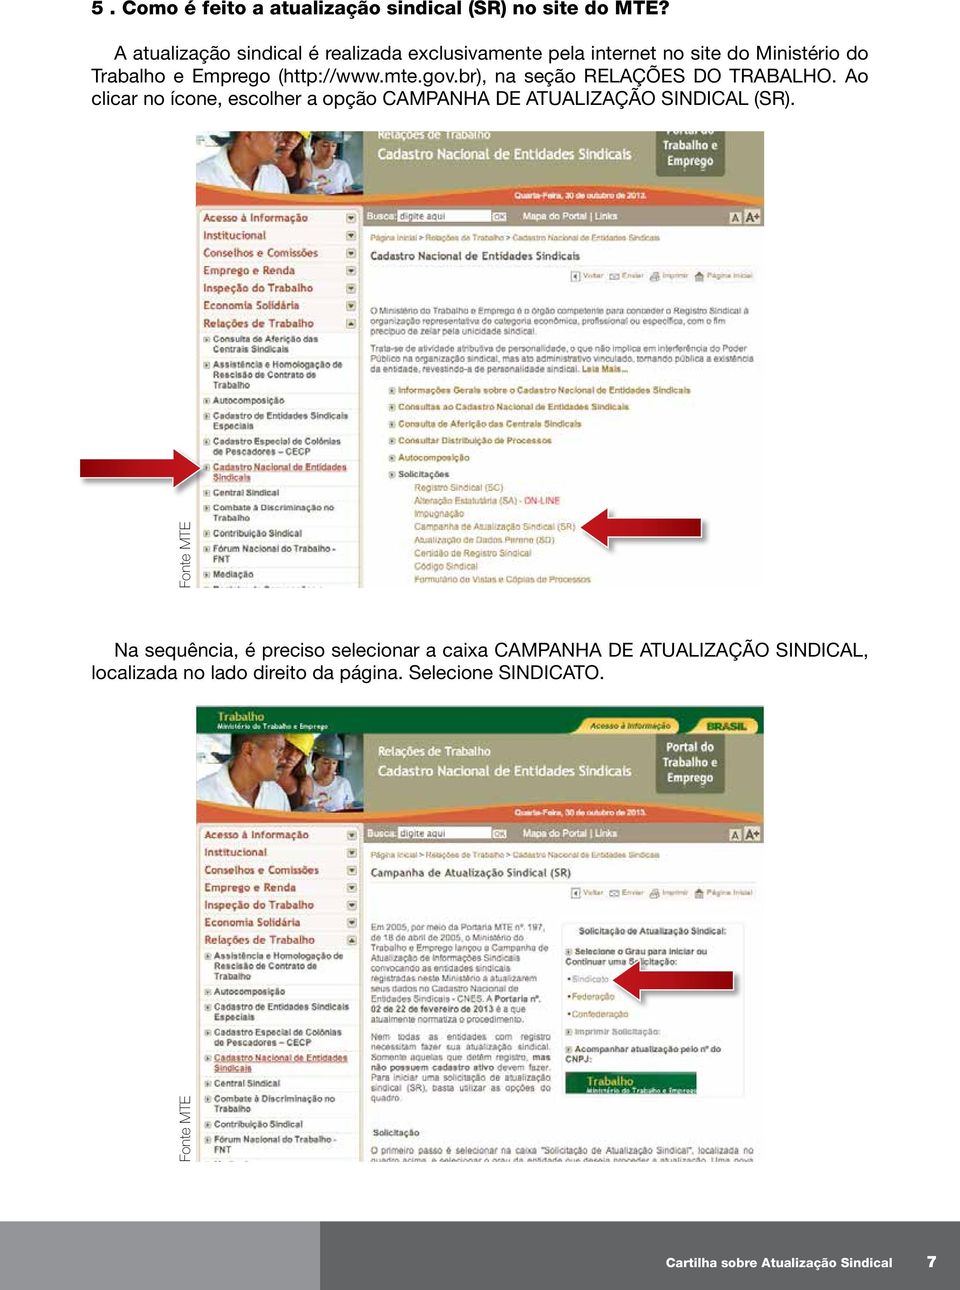 gov.br), na seção RELAÇÕES DO TRABALHO. Ao clicar no ícone, escolher a opção CAMPANHA DE ATUALIZAÇÃO SINDICAL (SR).